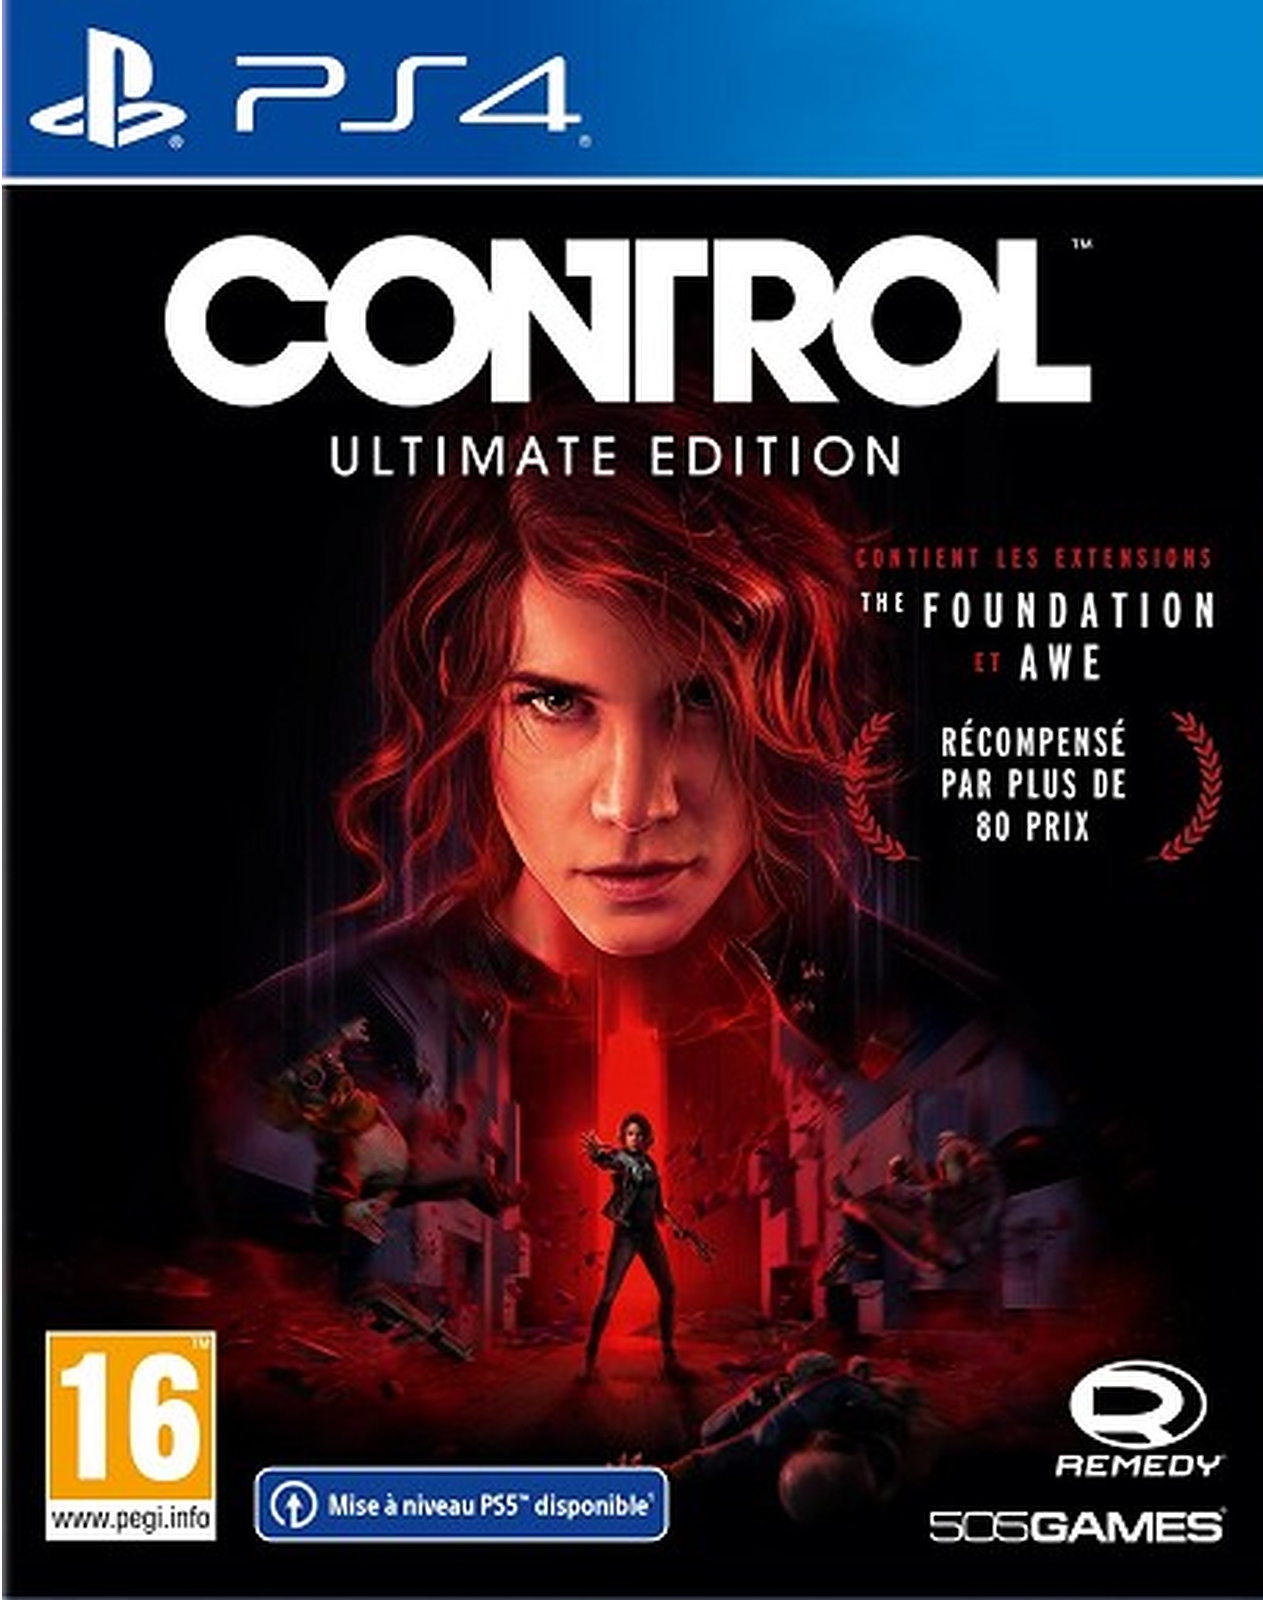 jaquette reduite de Control Ultimate Edition sur Playstation 4